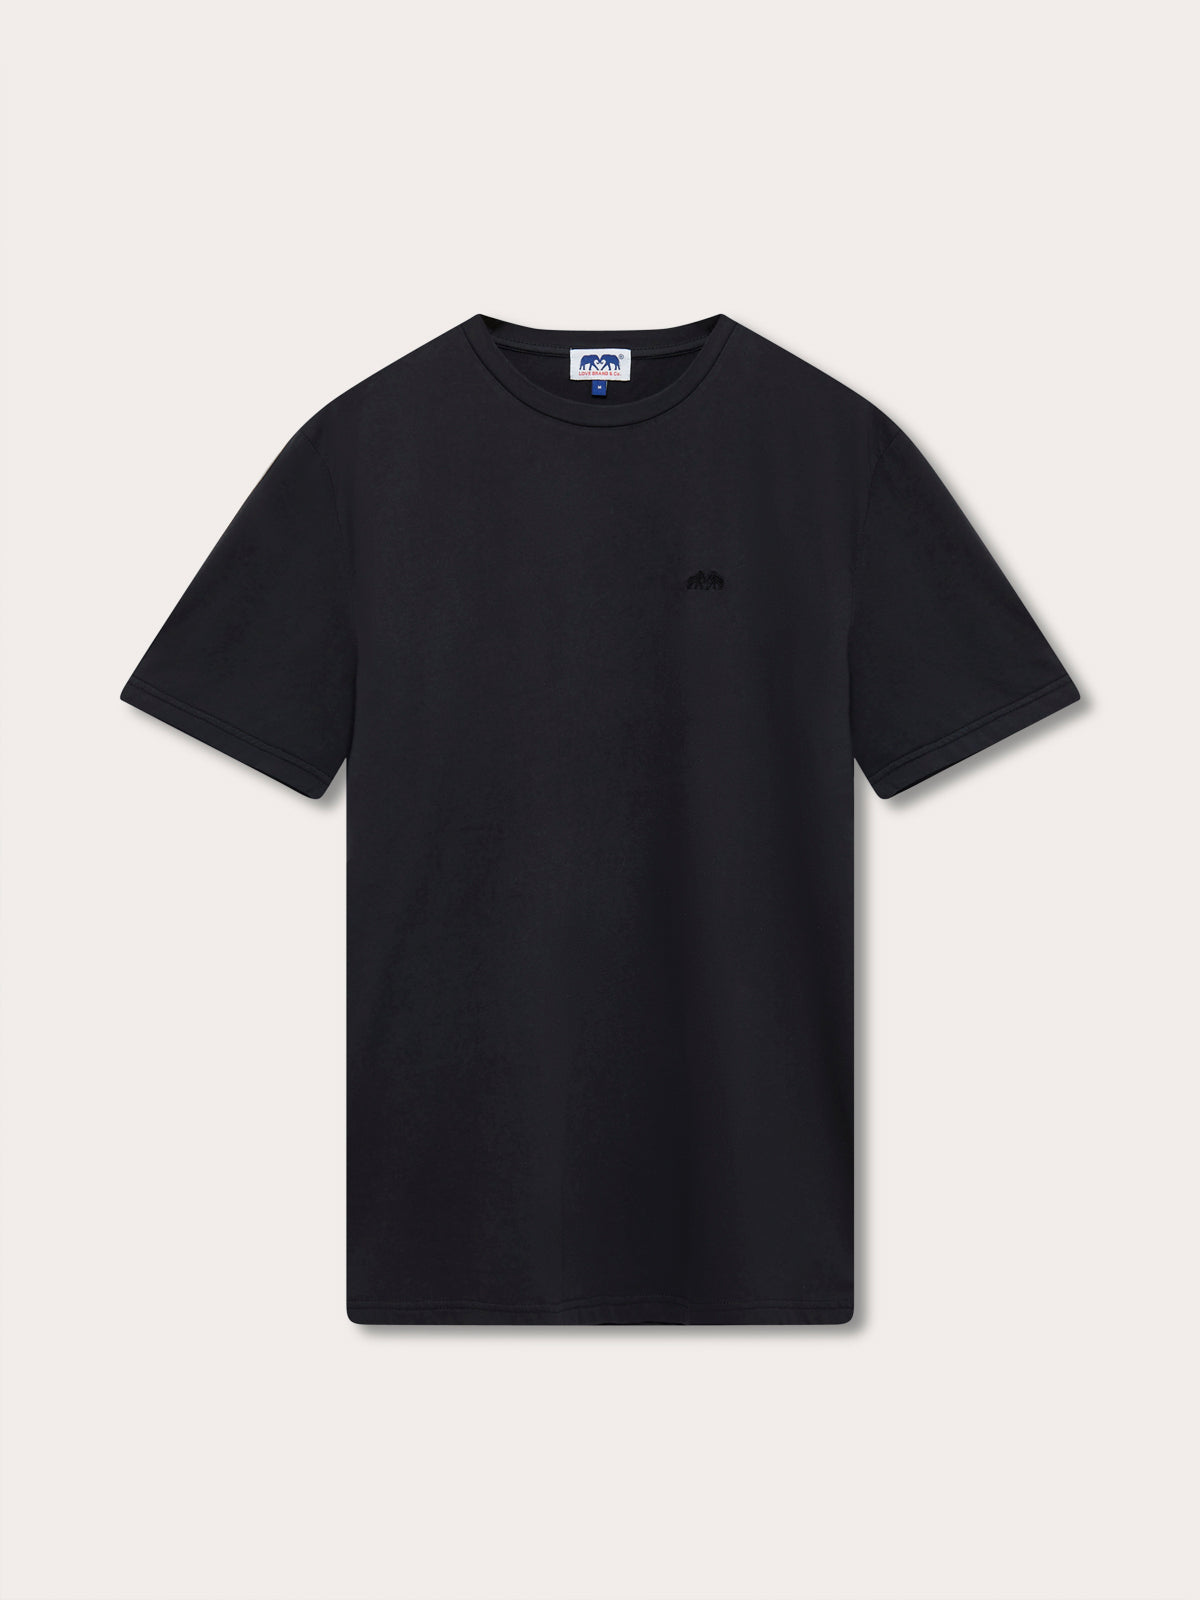 Men's Volcanic Black Lockhart T-Shirt